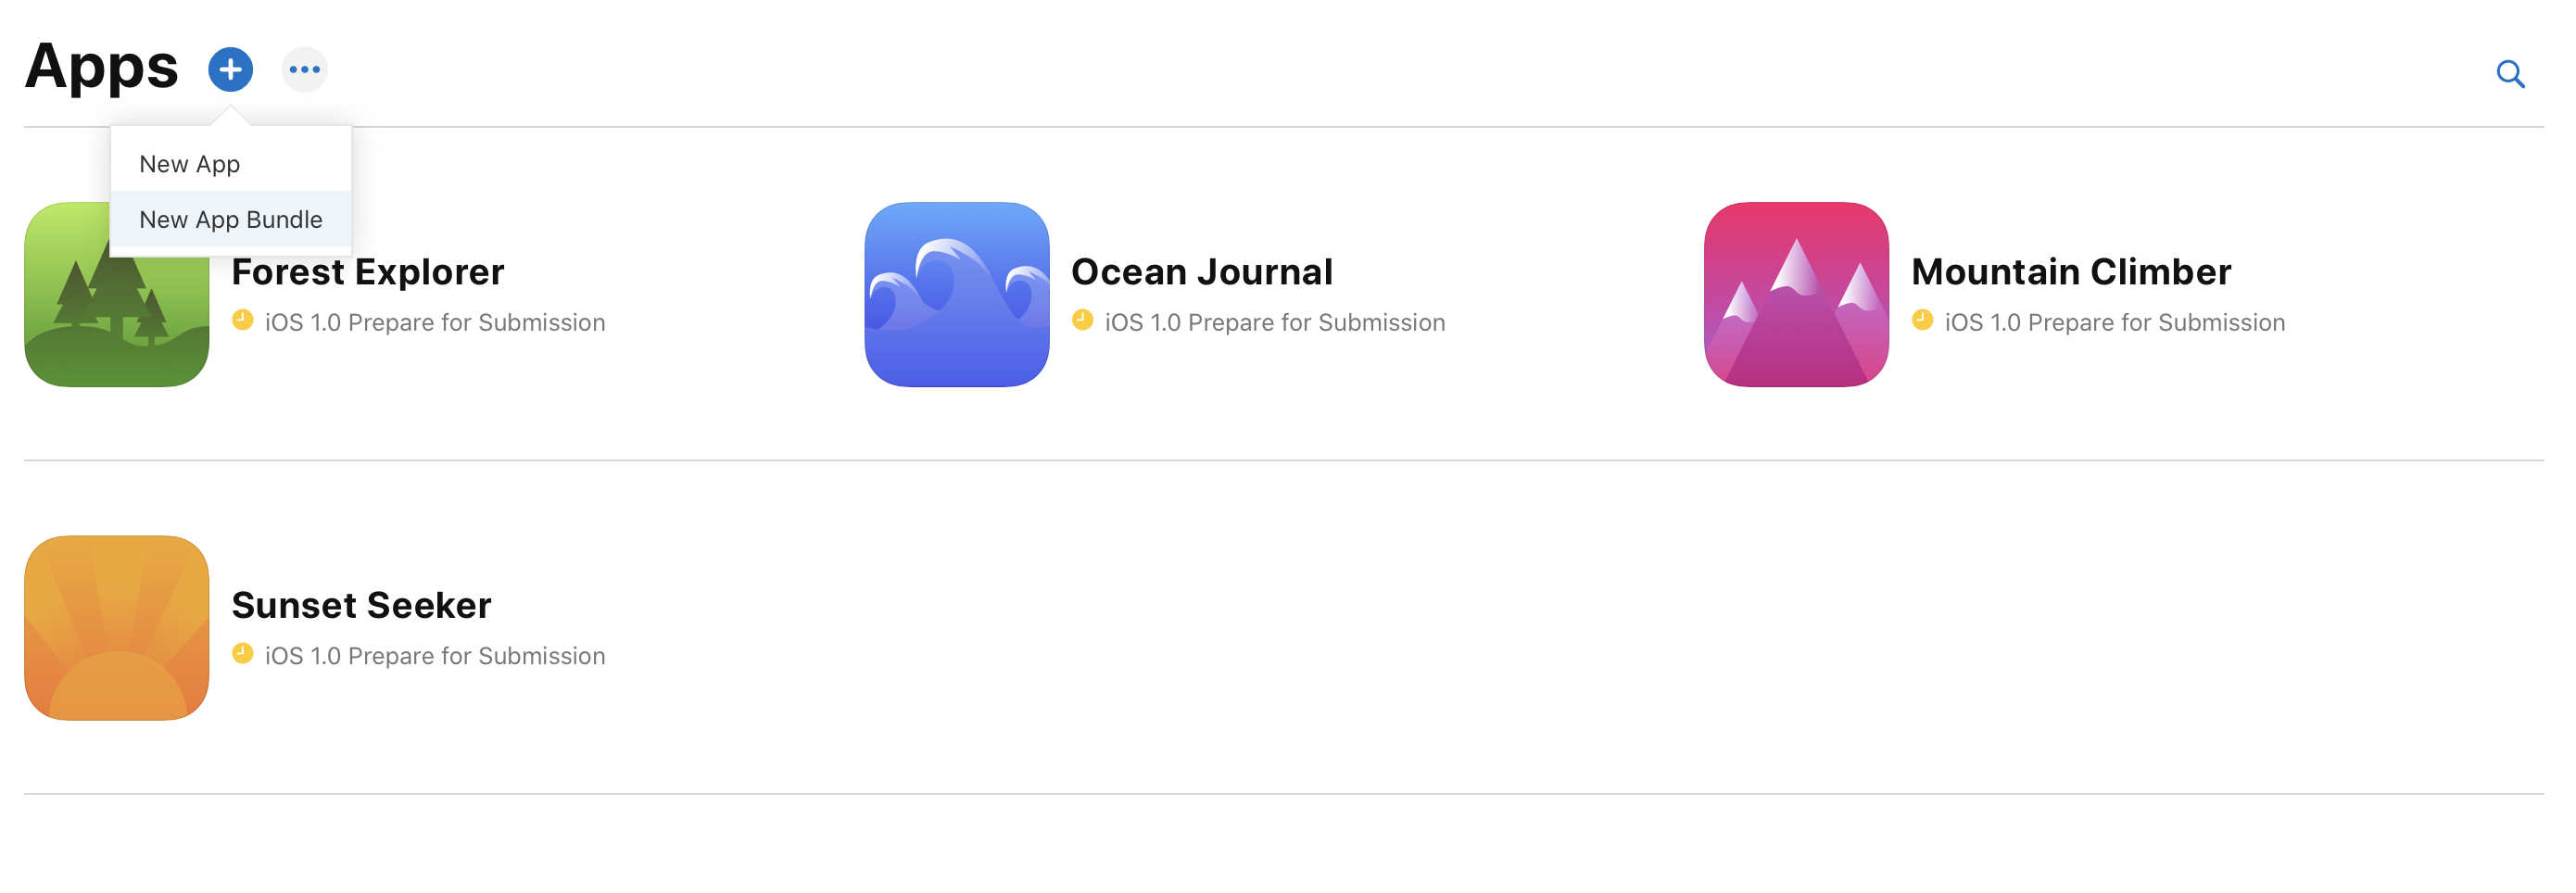 在“我的 App”页面点按左上角的添加按钮，菜单中会显示着“新建 App”和“新建 App 套装”的选项。